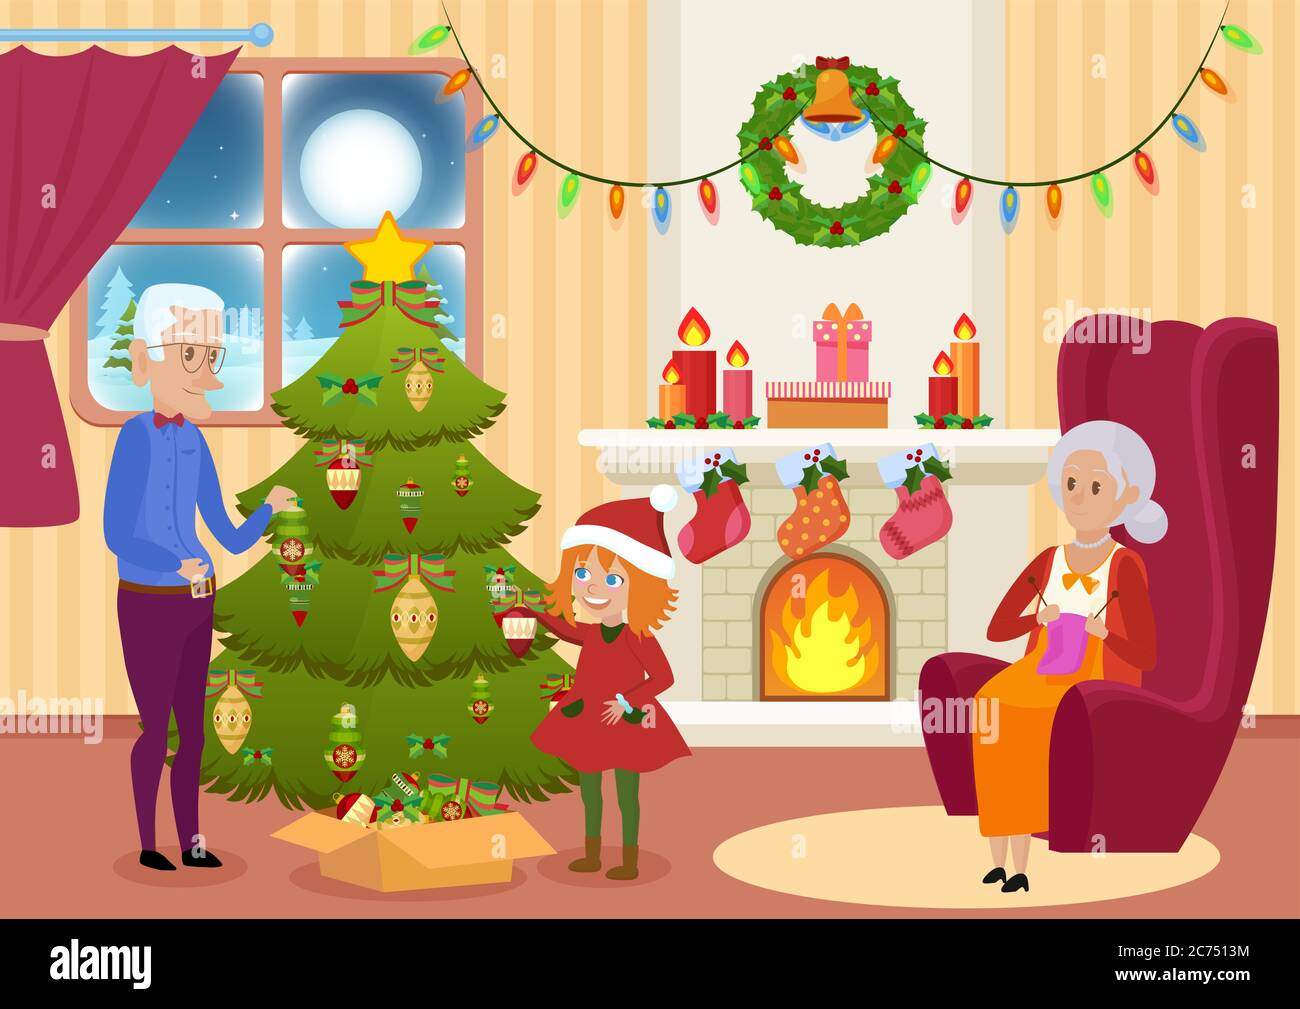 Vektor-Illustration von Enkelin und Großvater Dekoration Weihnachtsbaum, während Großmutter stricken. Stock Vektor